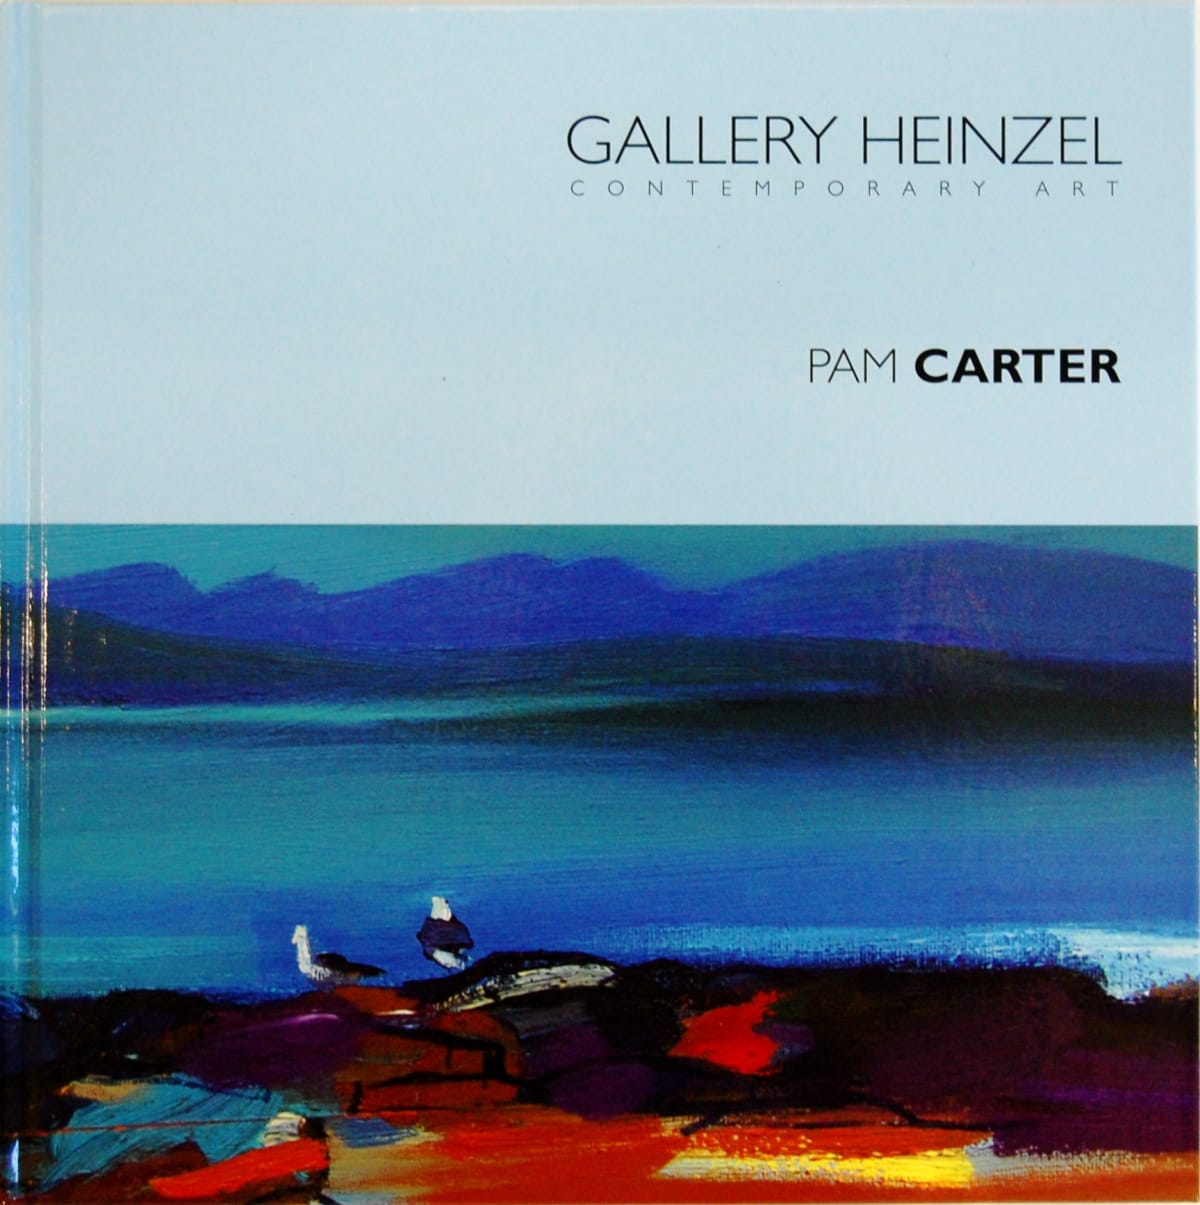 Gallery Heinzel presents PAM CARTER